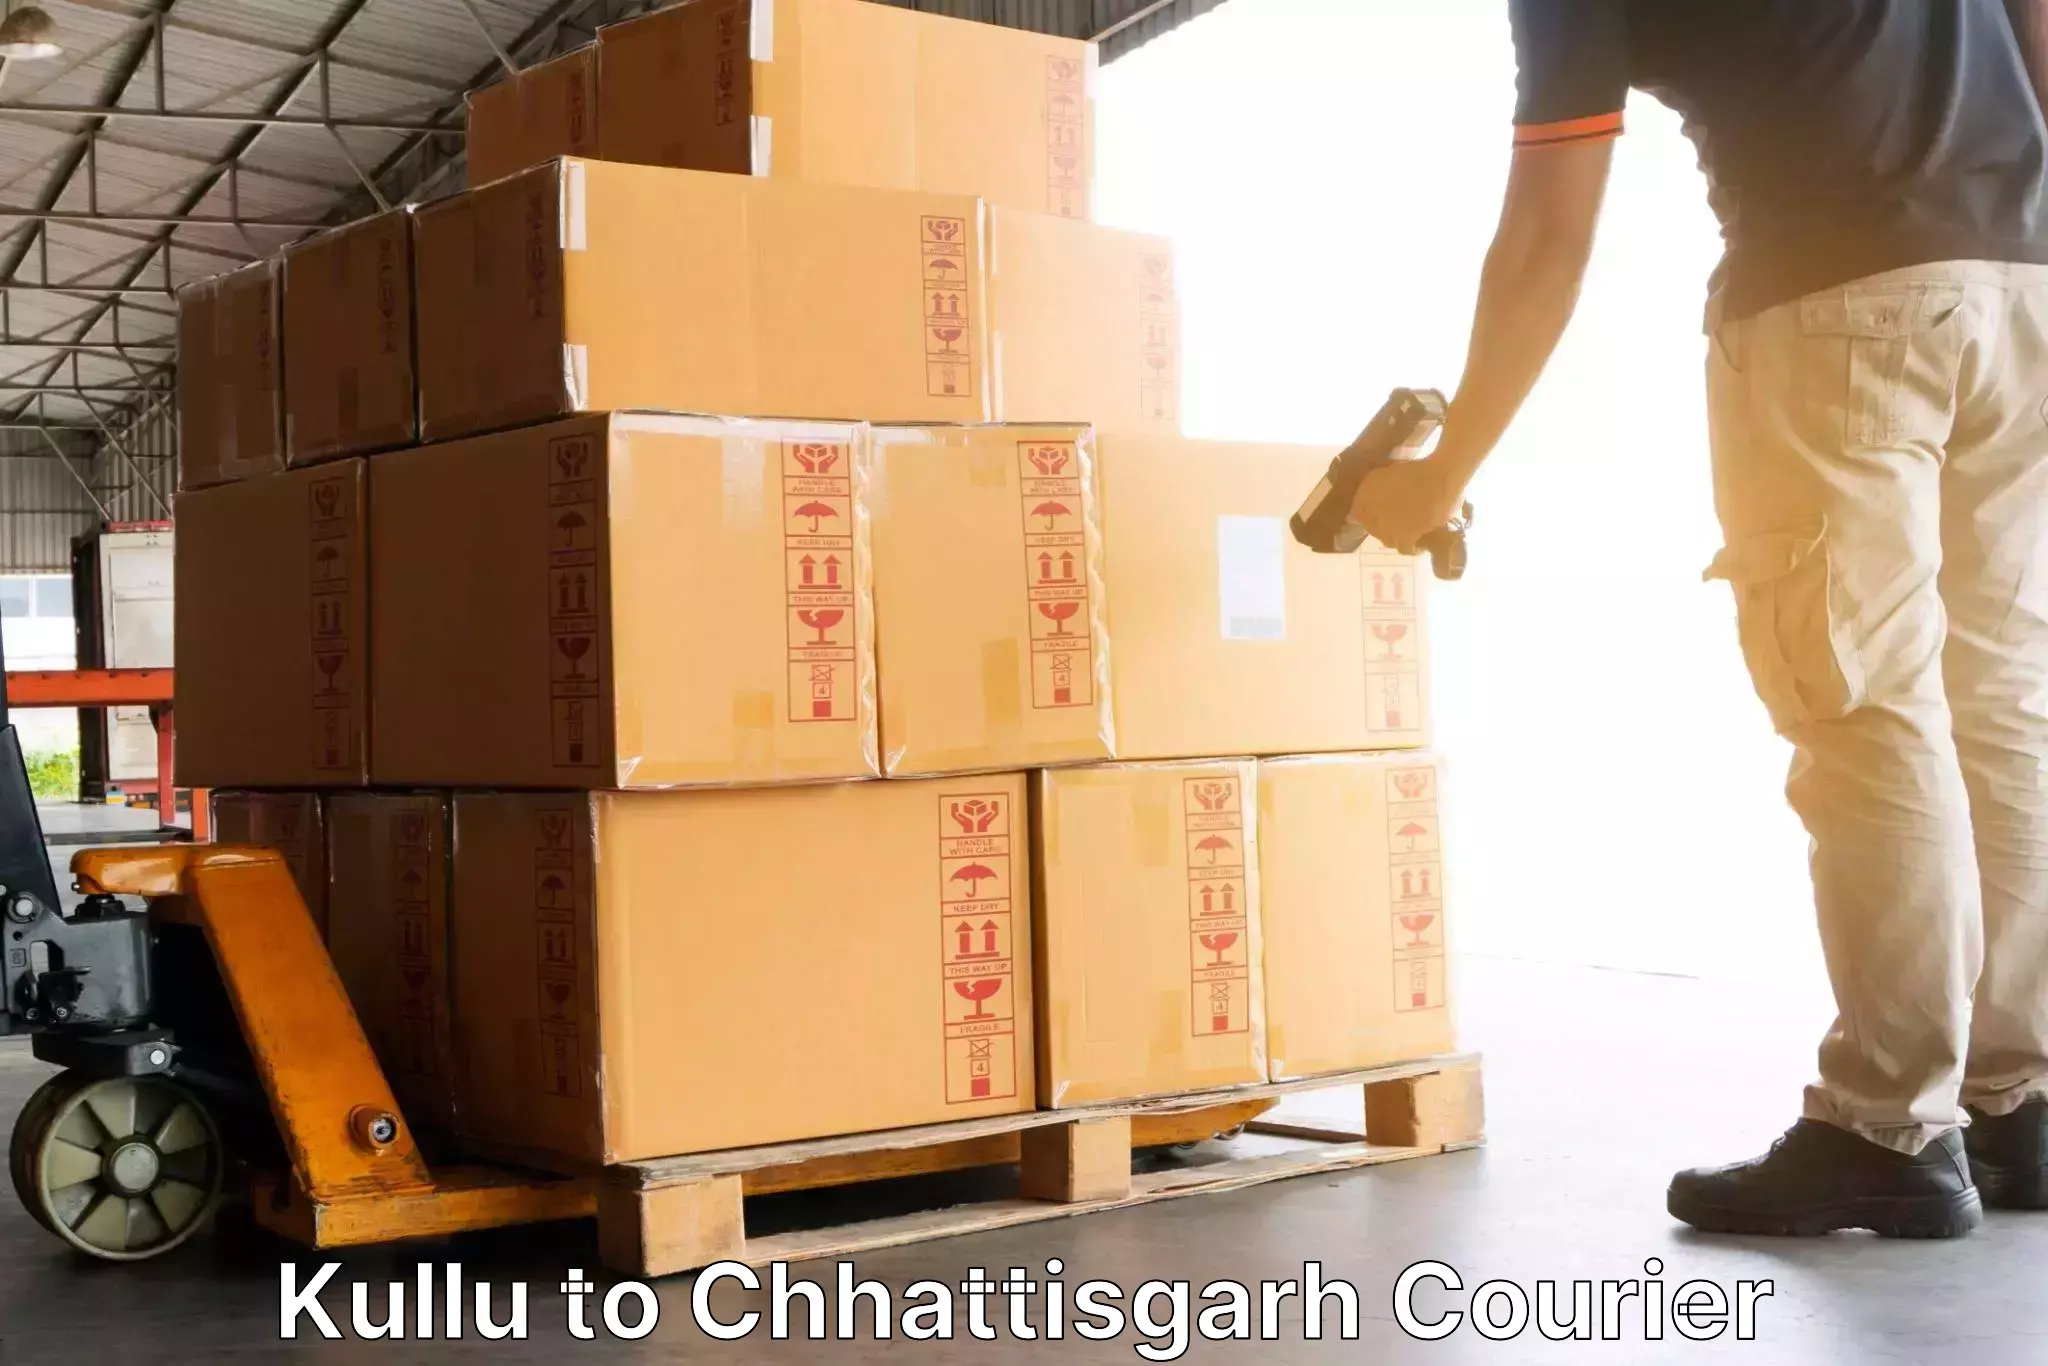 Affordable parcel service Kullu to Mahasamund